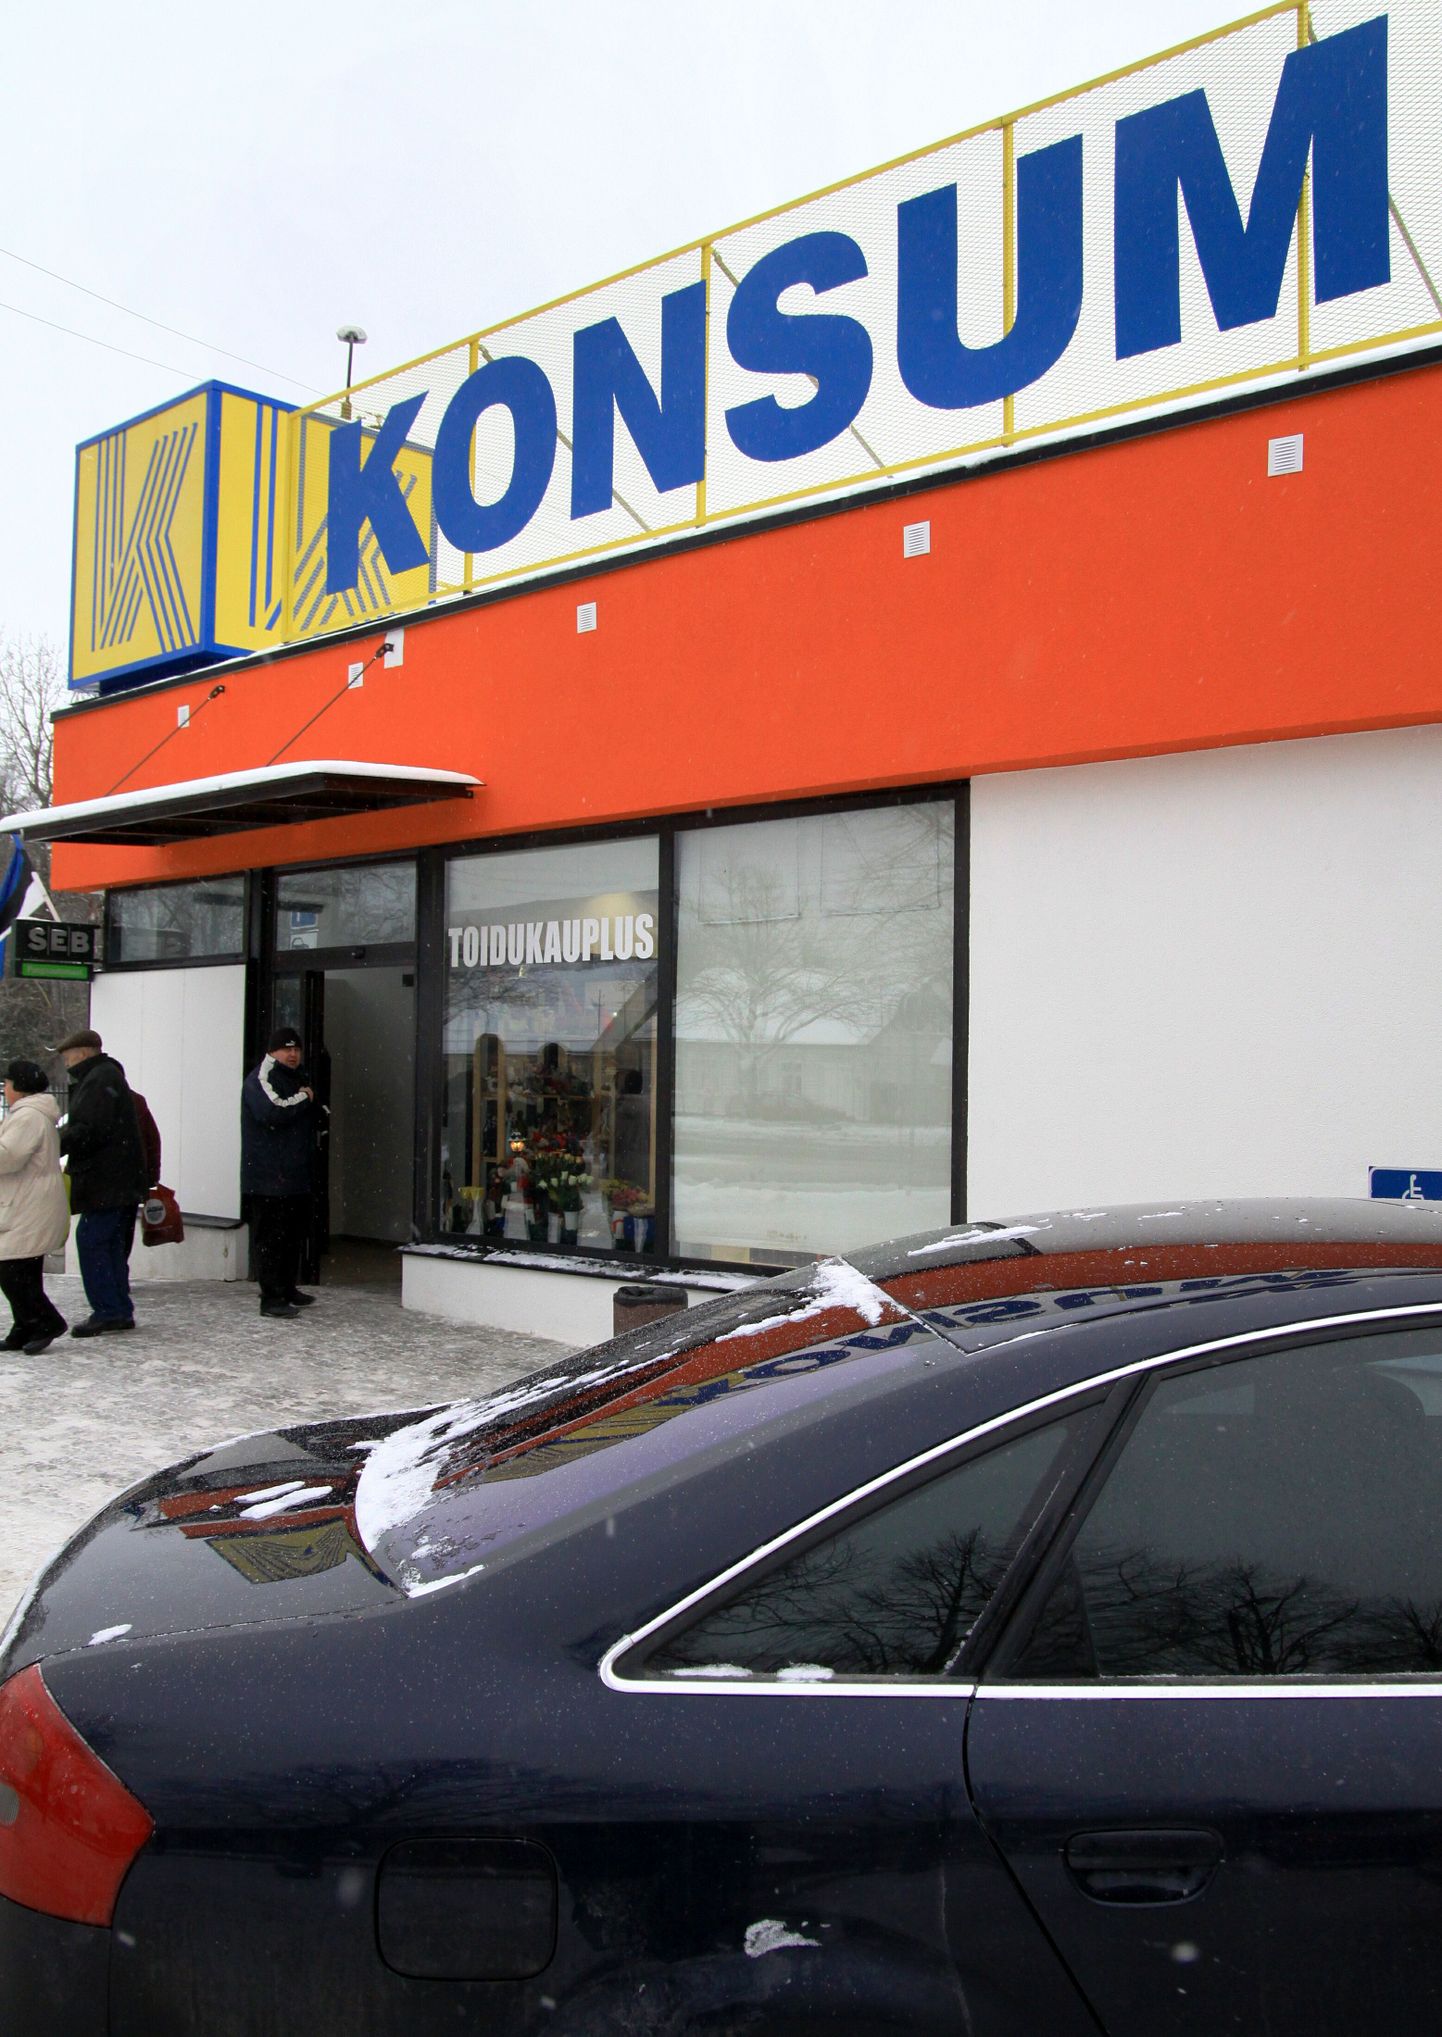 Täna öösel rööviti Pärnus Tiina Konsumi juures asuvat sularahaautomaati.